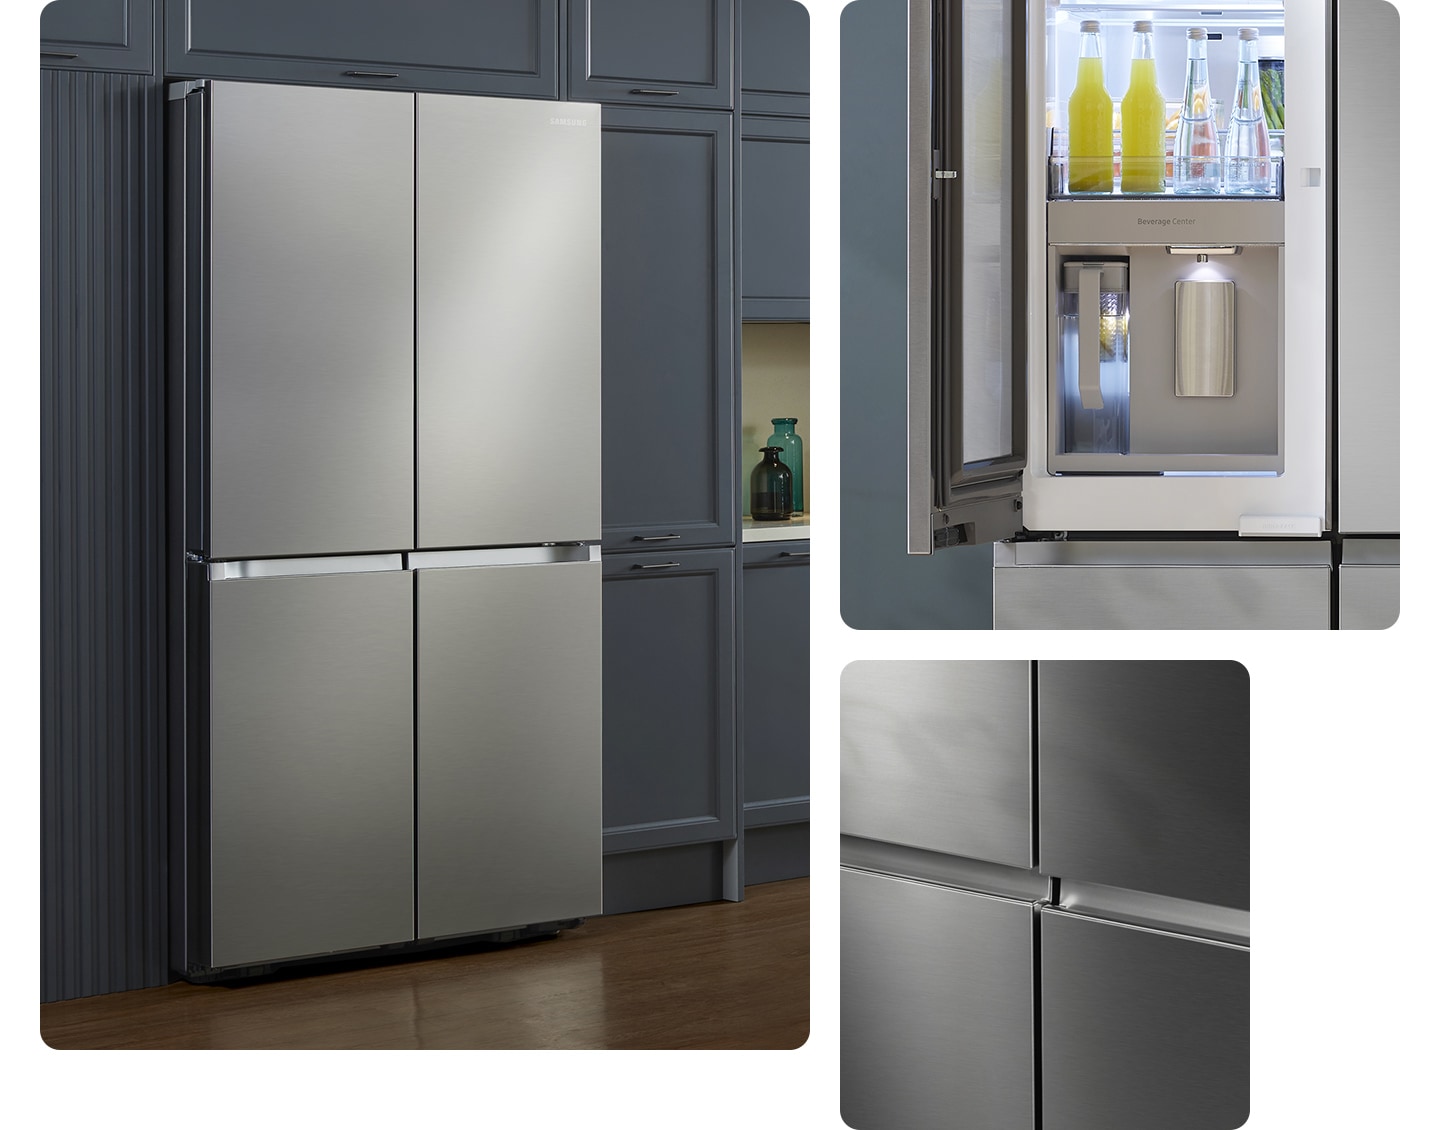 De strakke buitenkant van de koelkast geeft een strakke uitstraling aan de moderne keuken, met een vlakke afwerking en geen verzonken handgrepen.